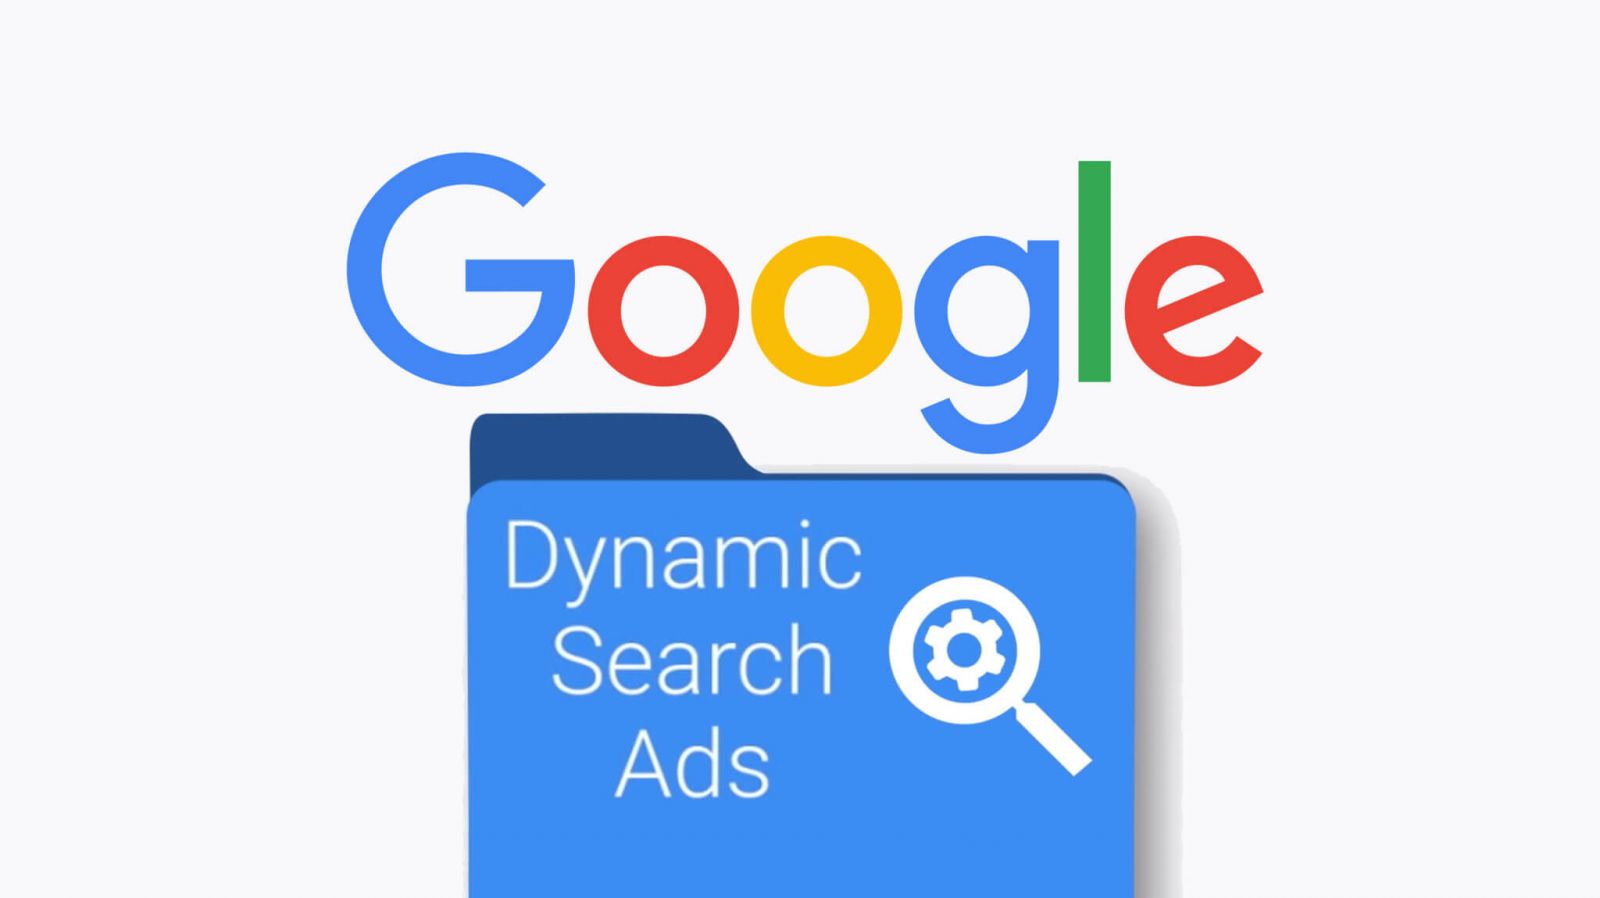 Quảng cáo tìm kiếm động Google là gì? Dynamic Search Ads